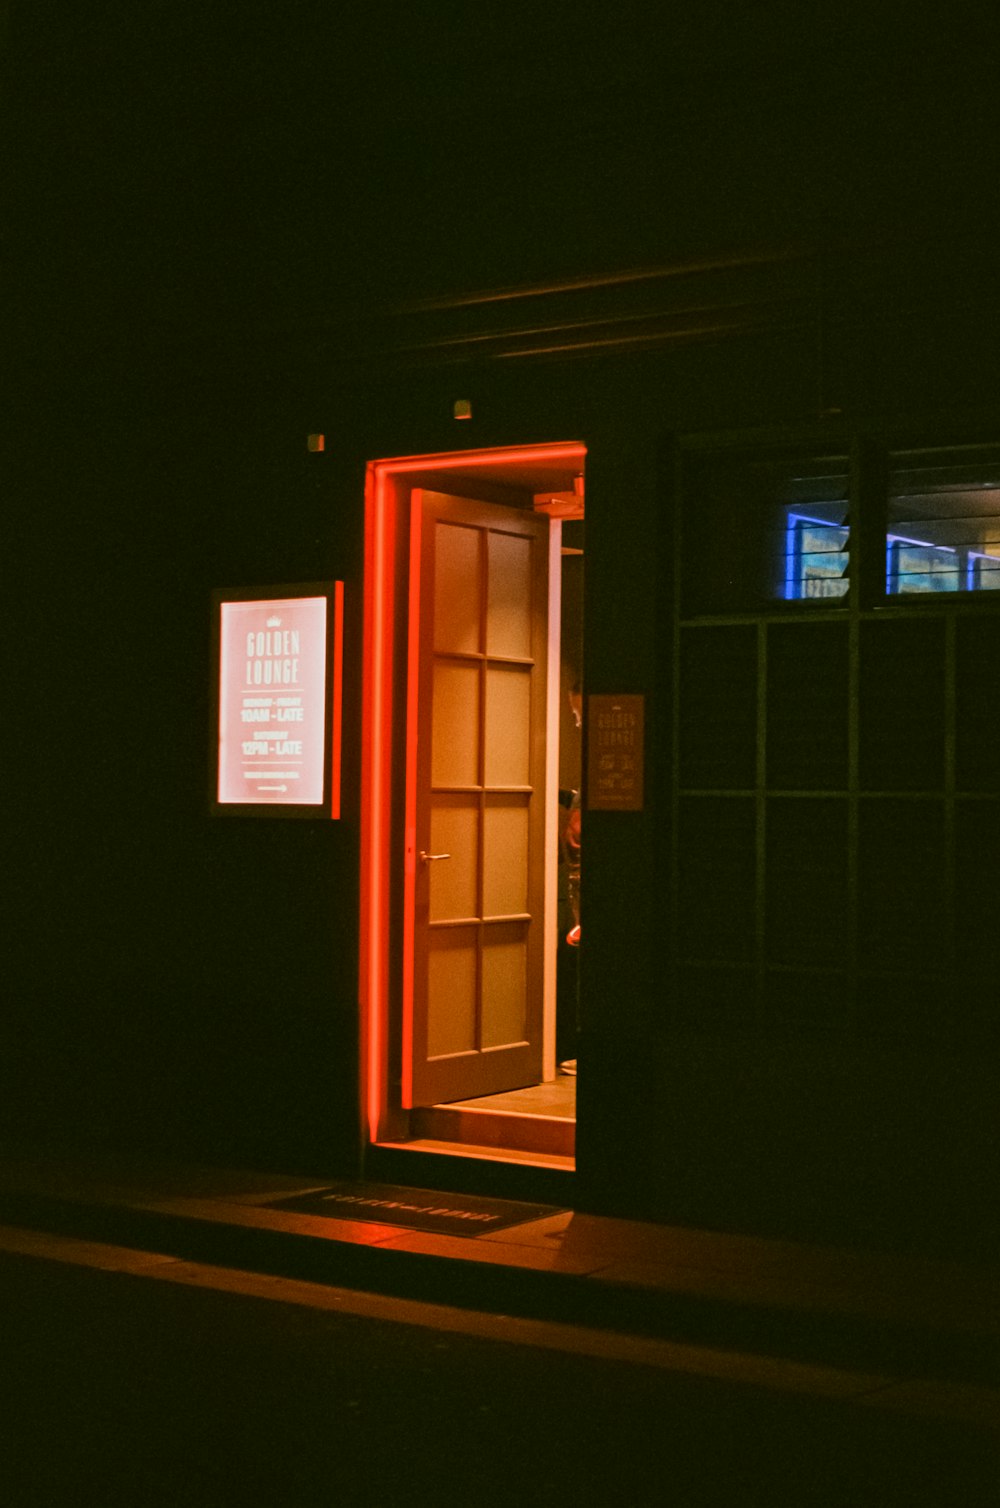 an open door in a dark room at night